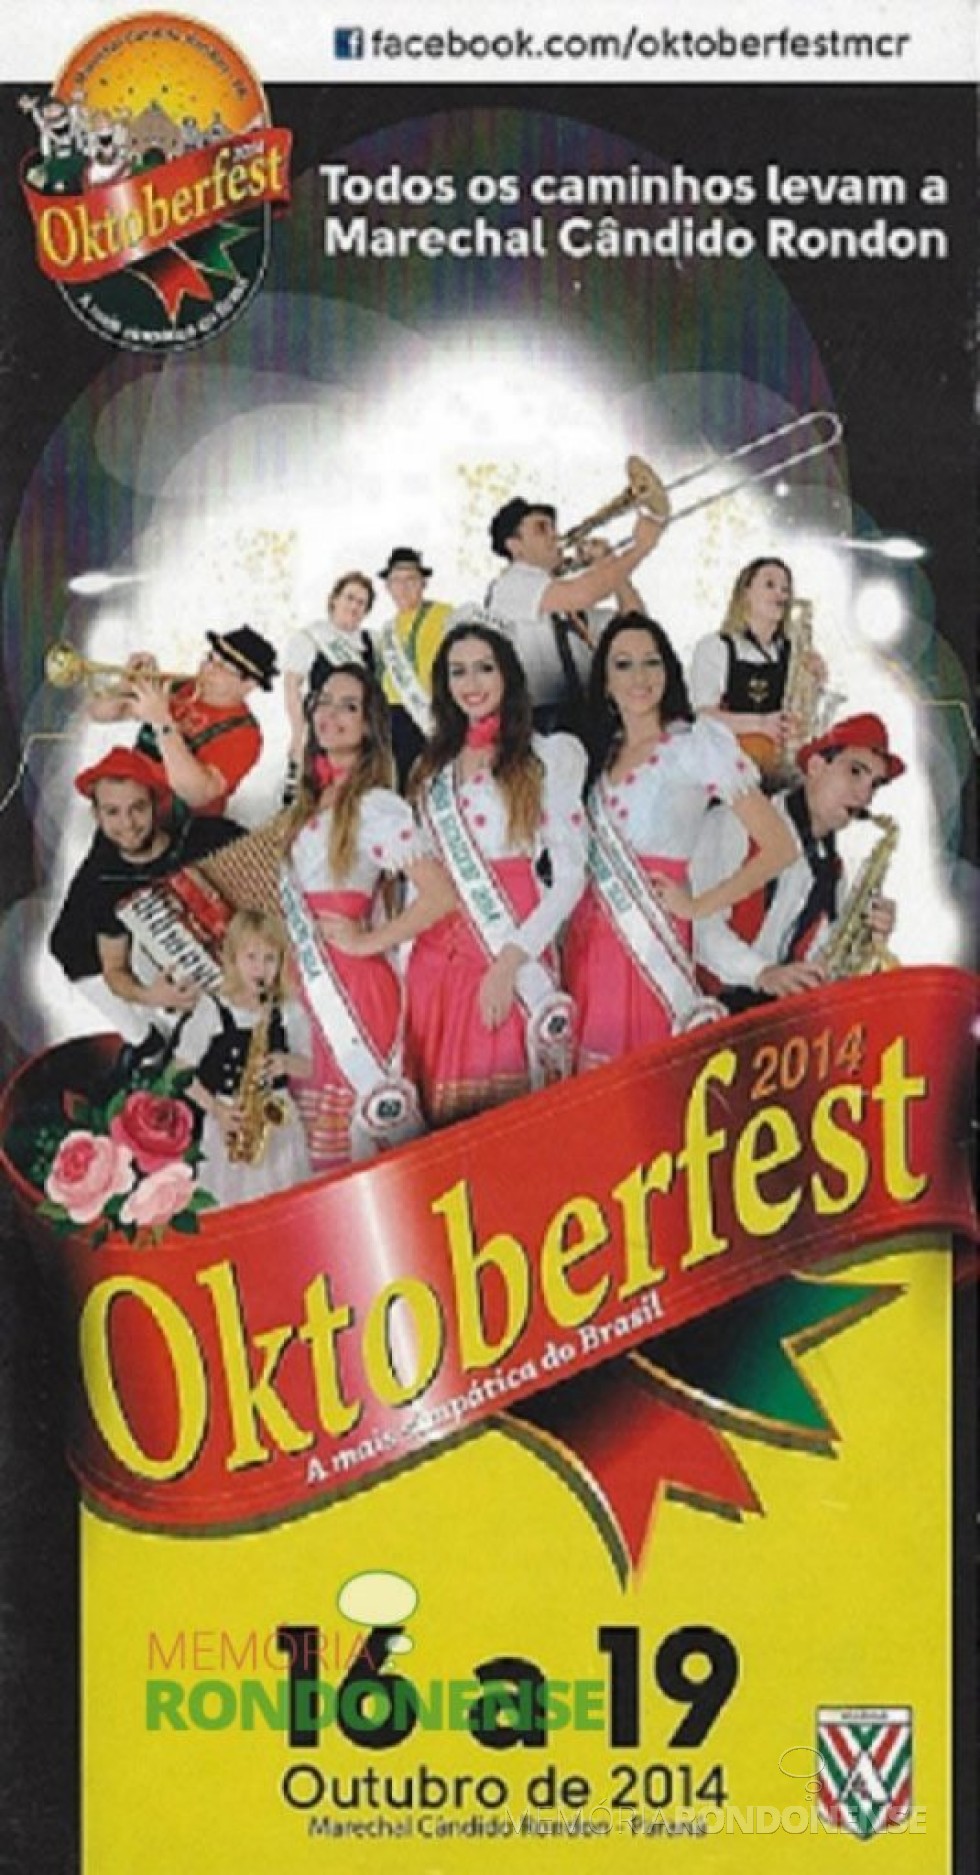 || Convite para a 26ª Oktoberfest de Marechal Cândido Rondon em outubro de 2014. 
Imagem: Facebook
- FOTO 6 - 